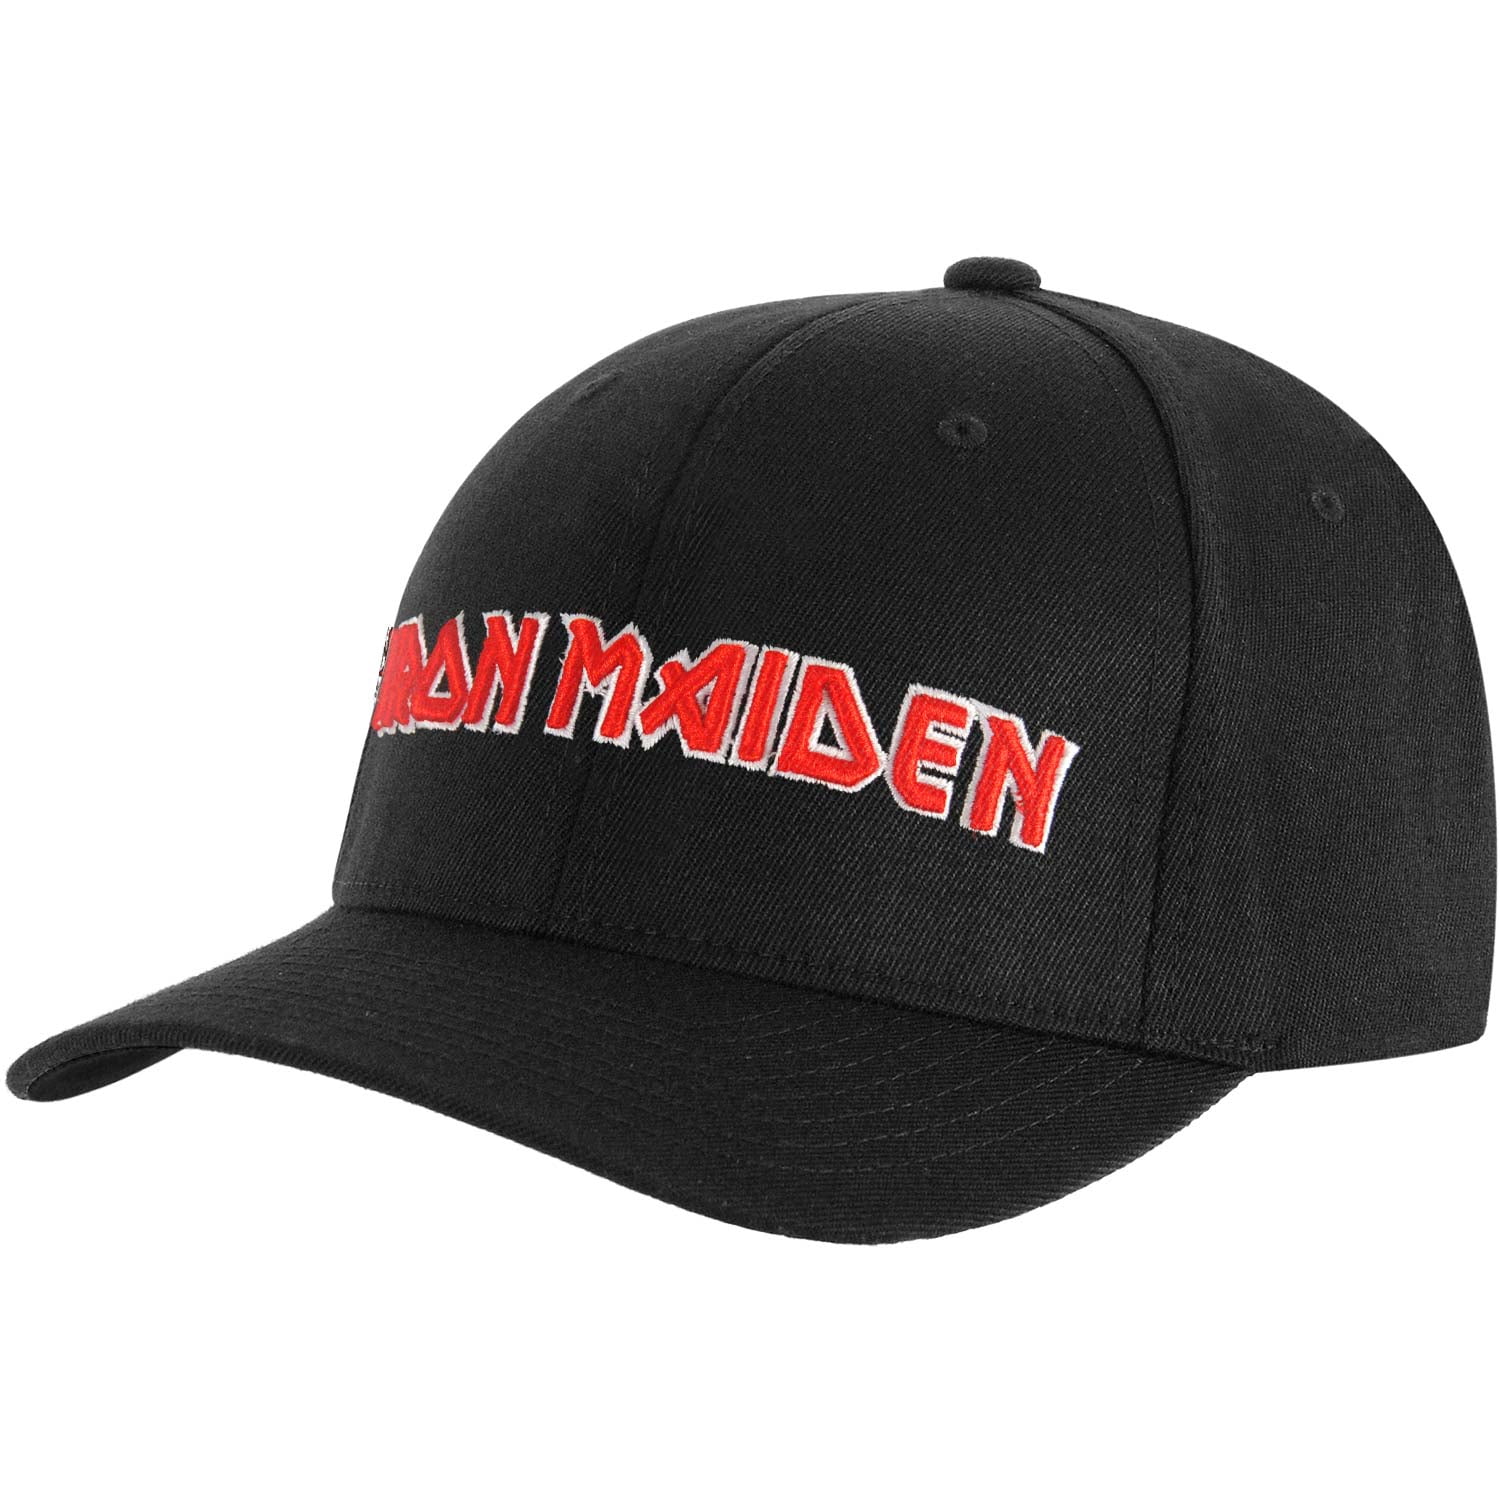 Iron Maiden - Iron Maiden Men's Logo Baseball Cap Adjustable Black ...